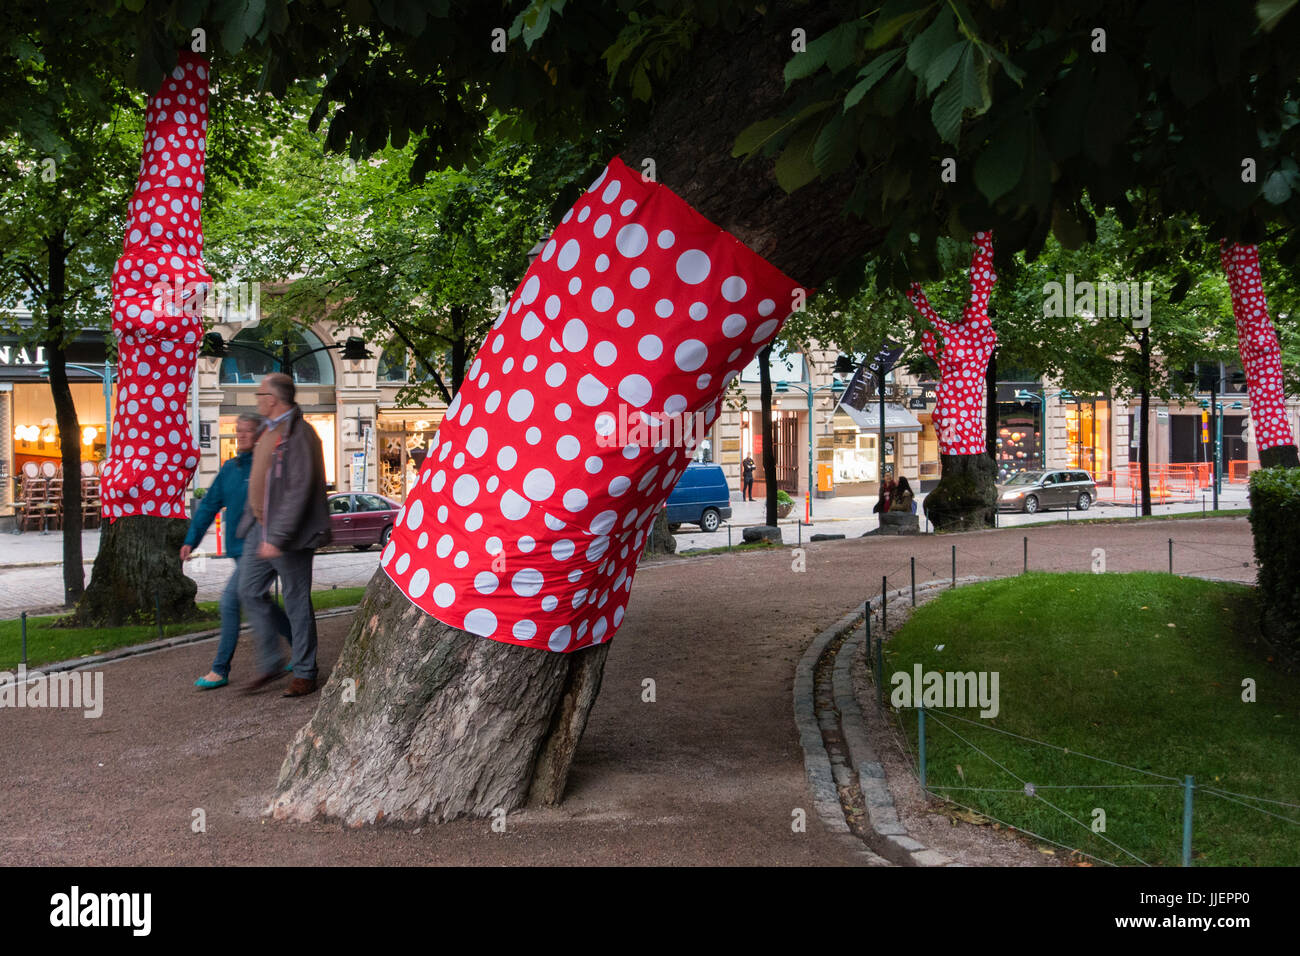 Dekorative rote Tarps, mit großen weißen Tupfen wickeln die Baumstämme in Esplanad Park im Stadtzentrum von Helsinki, Finnland. Stockfoto